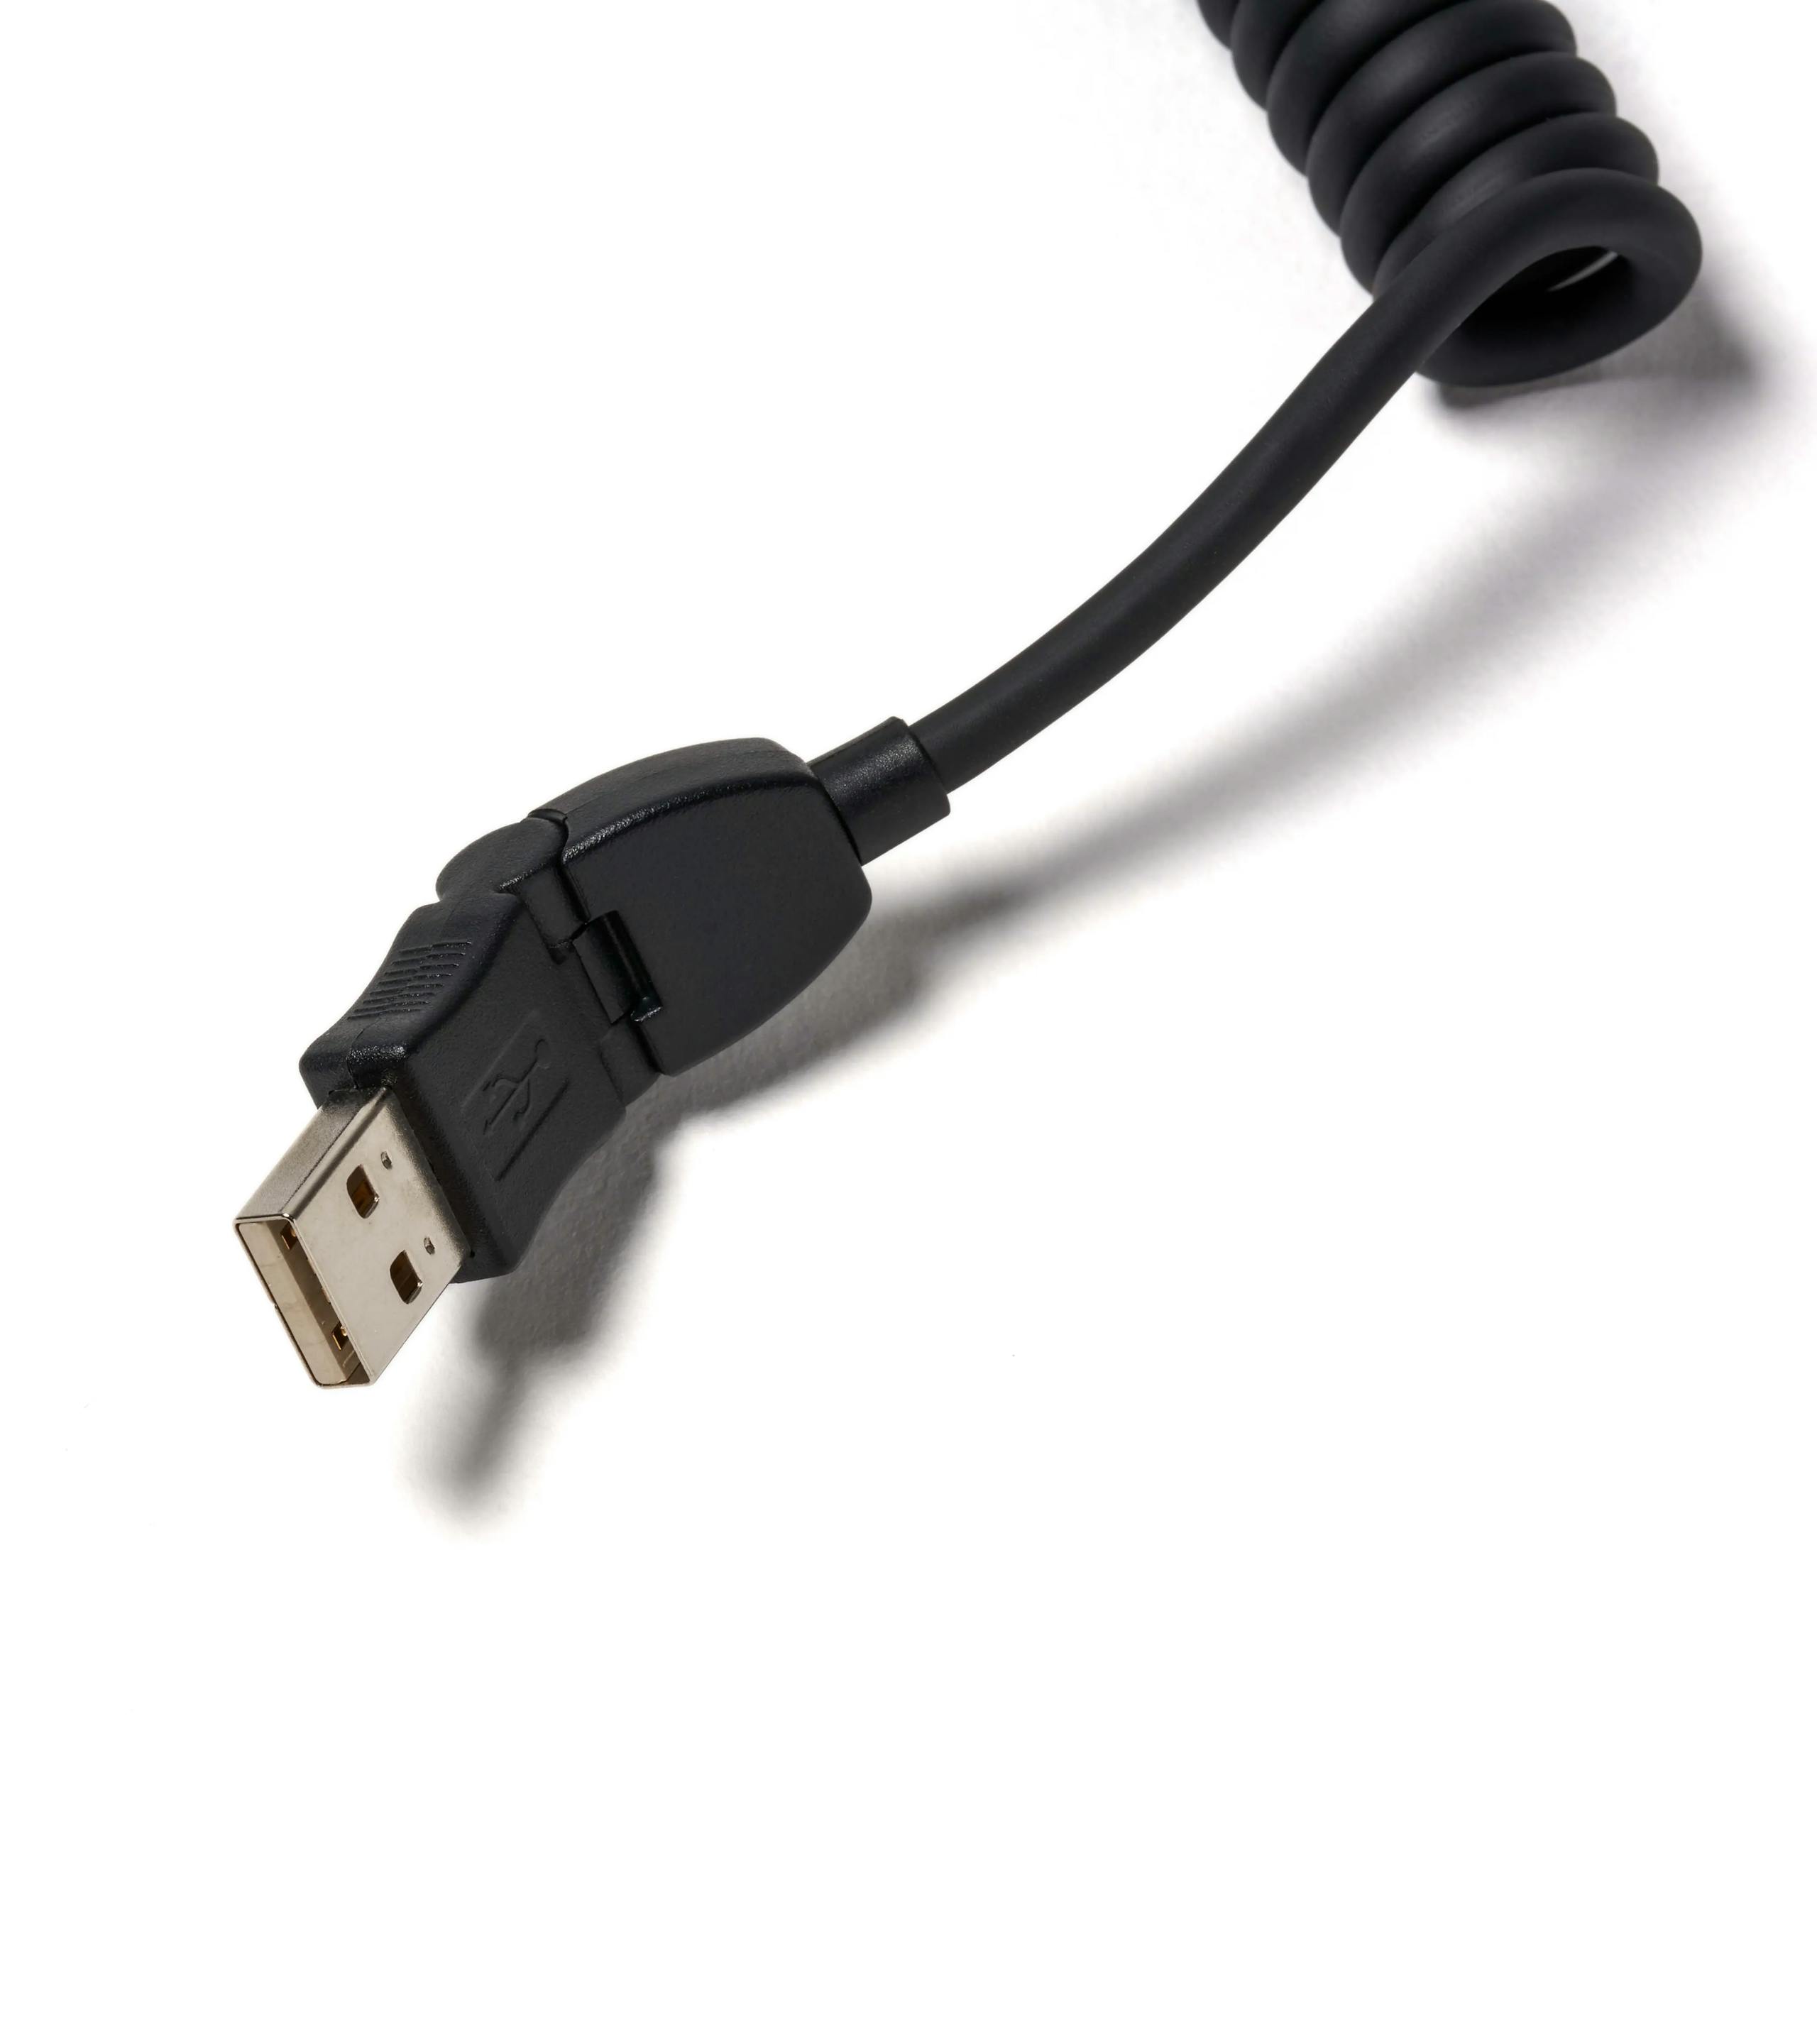 Cable de carga USB para smartphone con conexión micro-USB 3